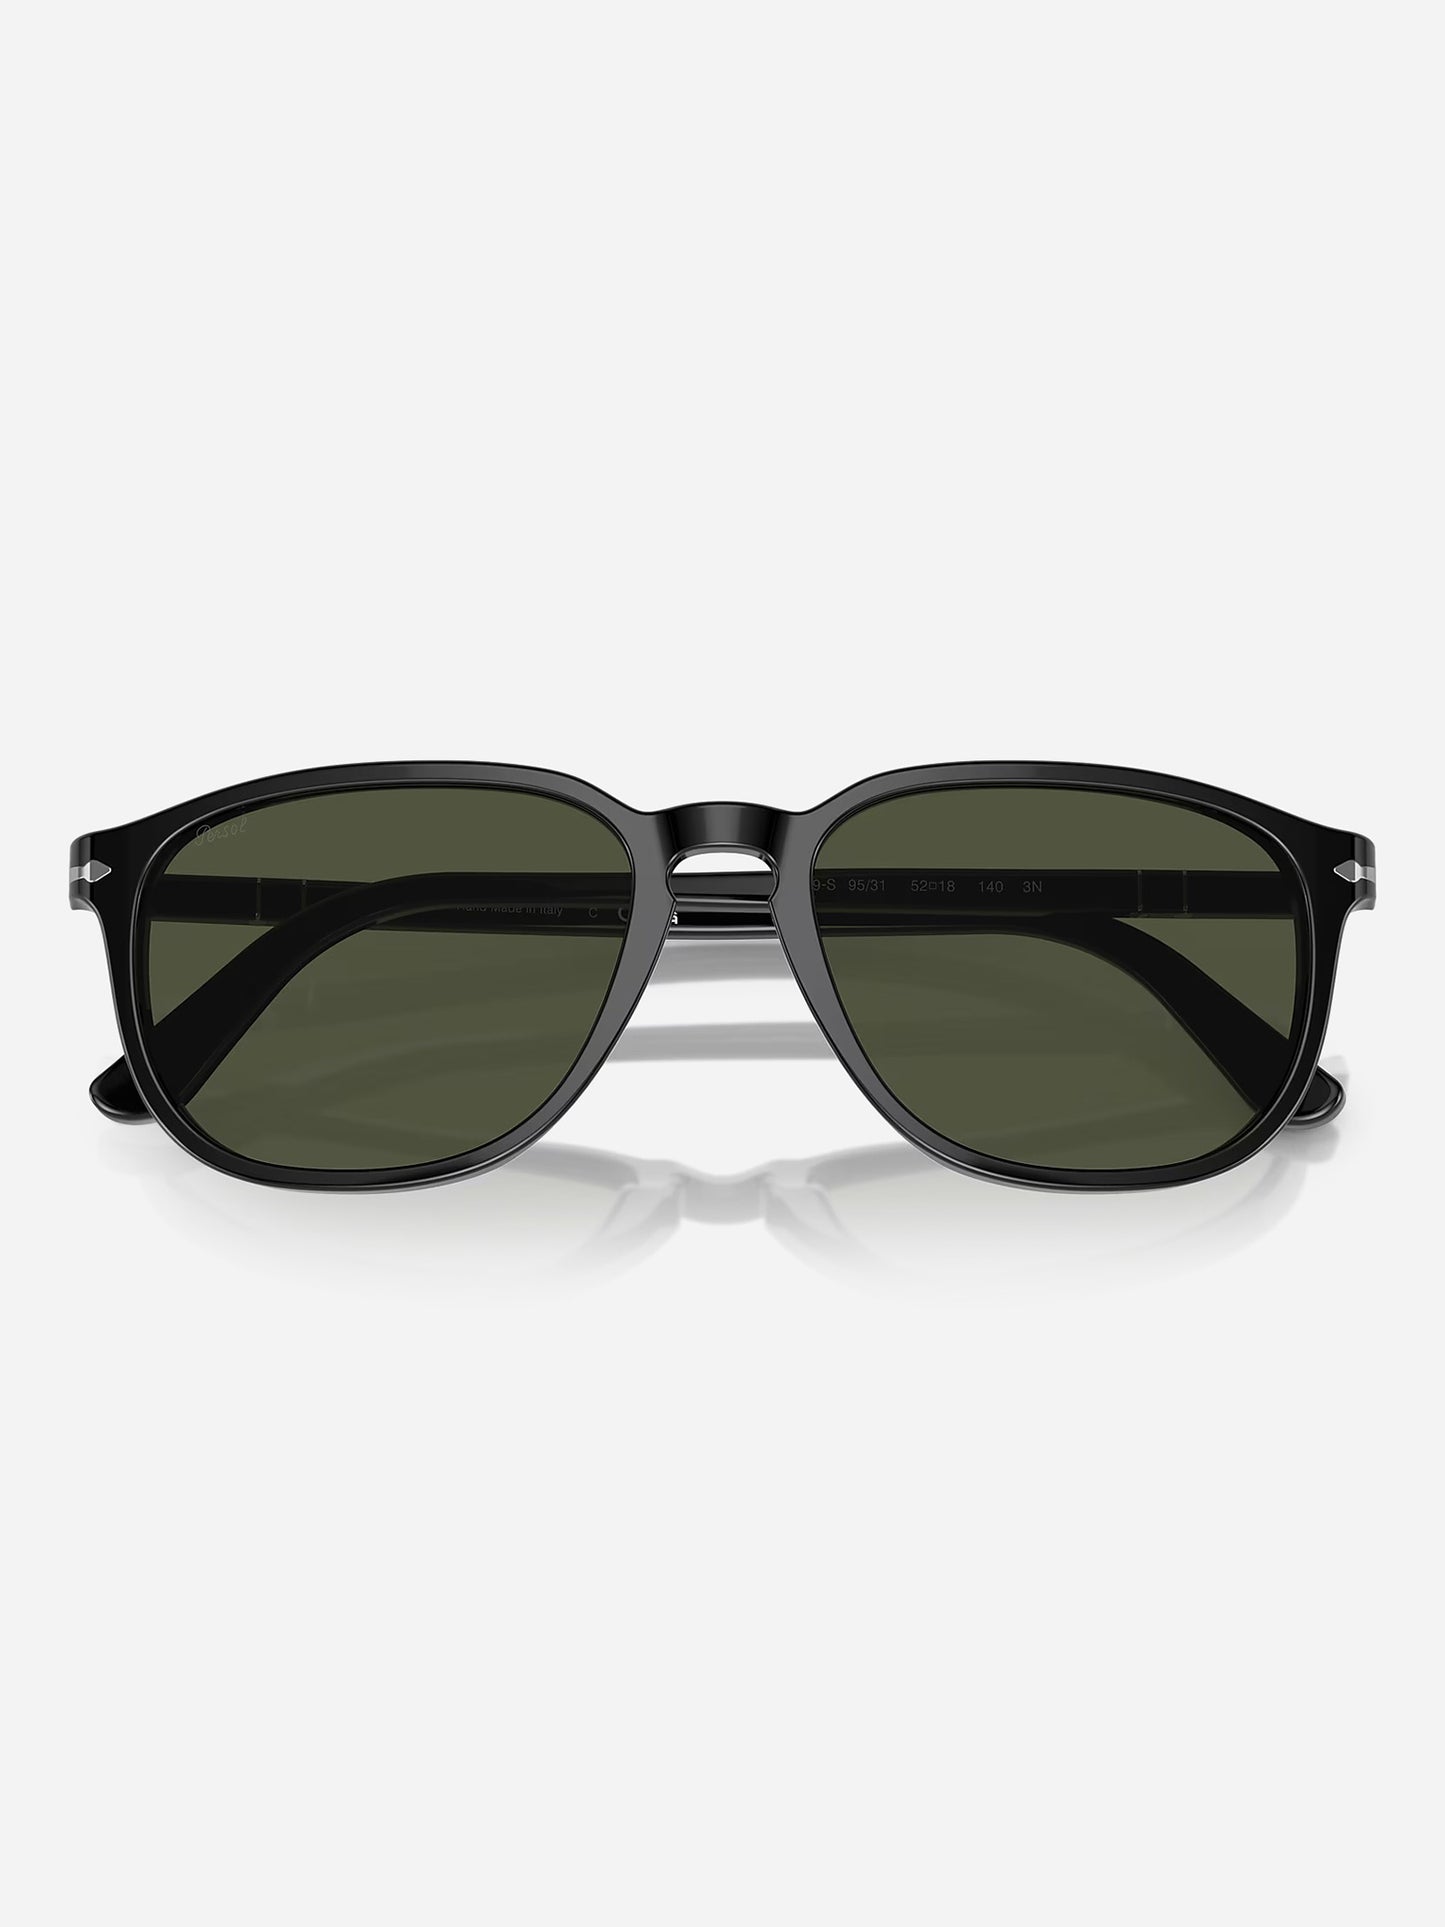 Persol PO3019S Sunglasses